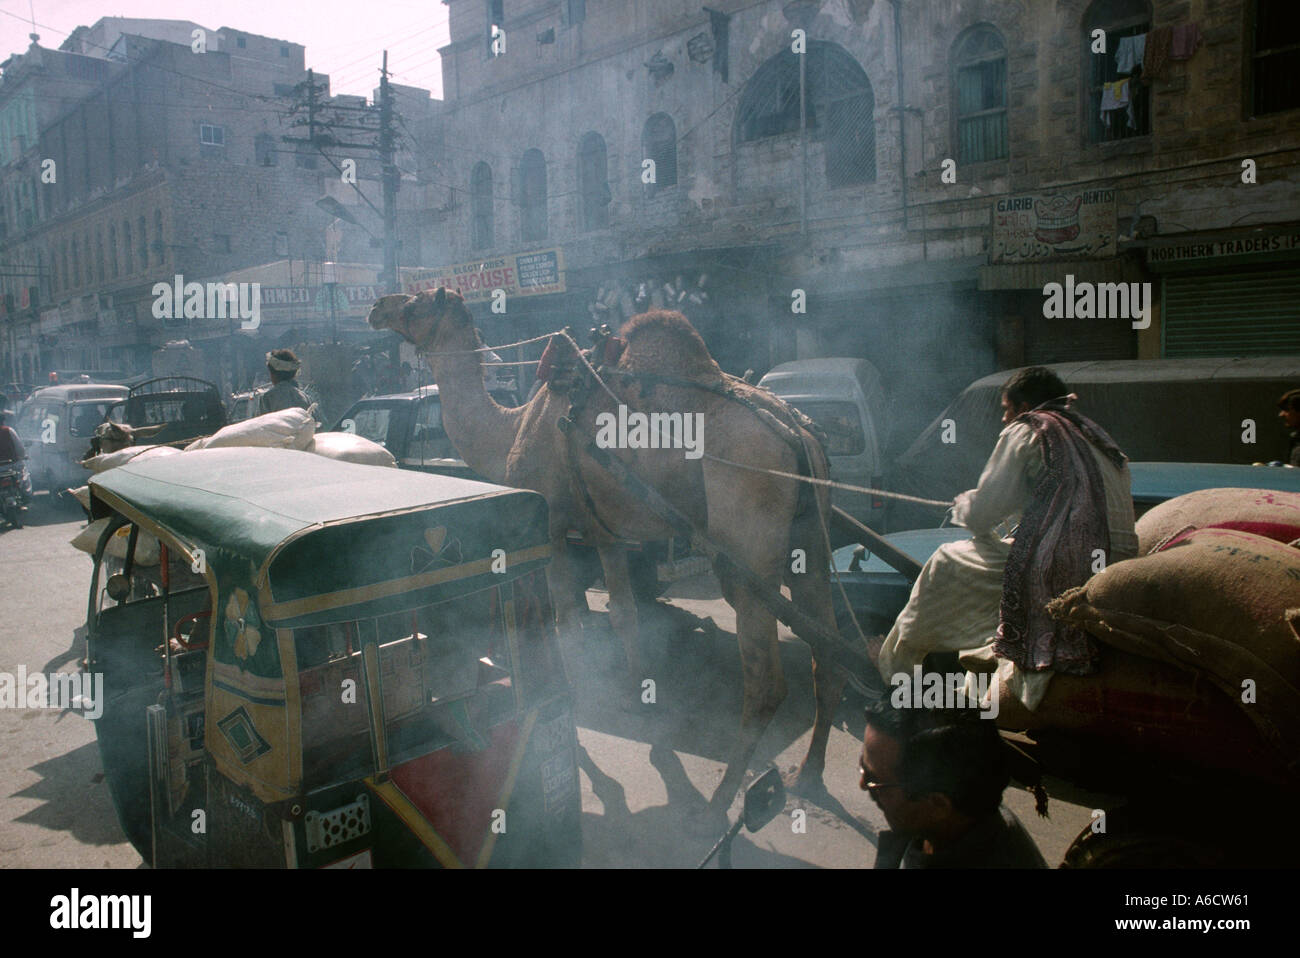 Sind Pakistan Karachi Lee camel marché panier dans les rues polluées Banque D'Images